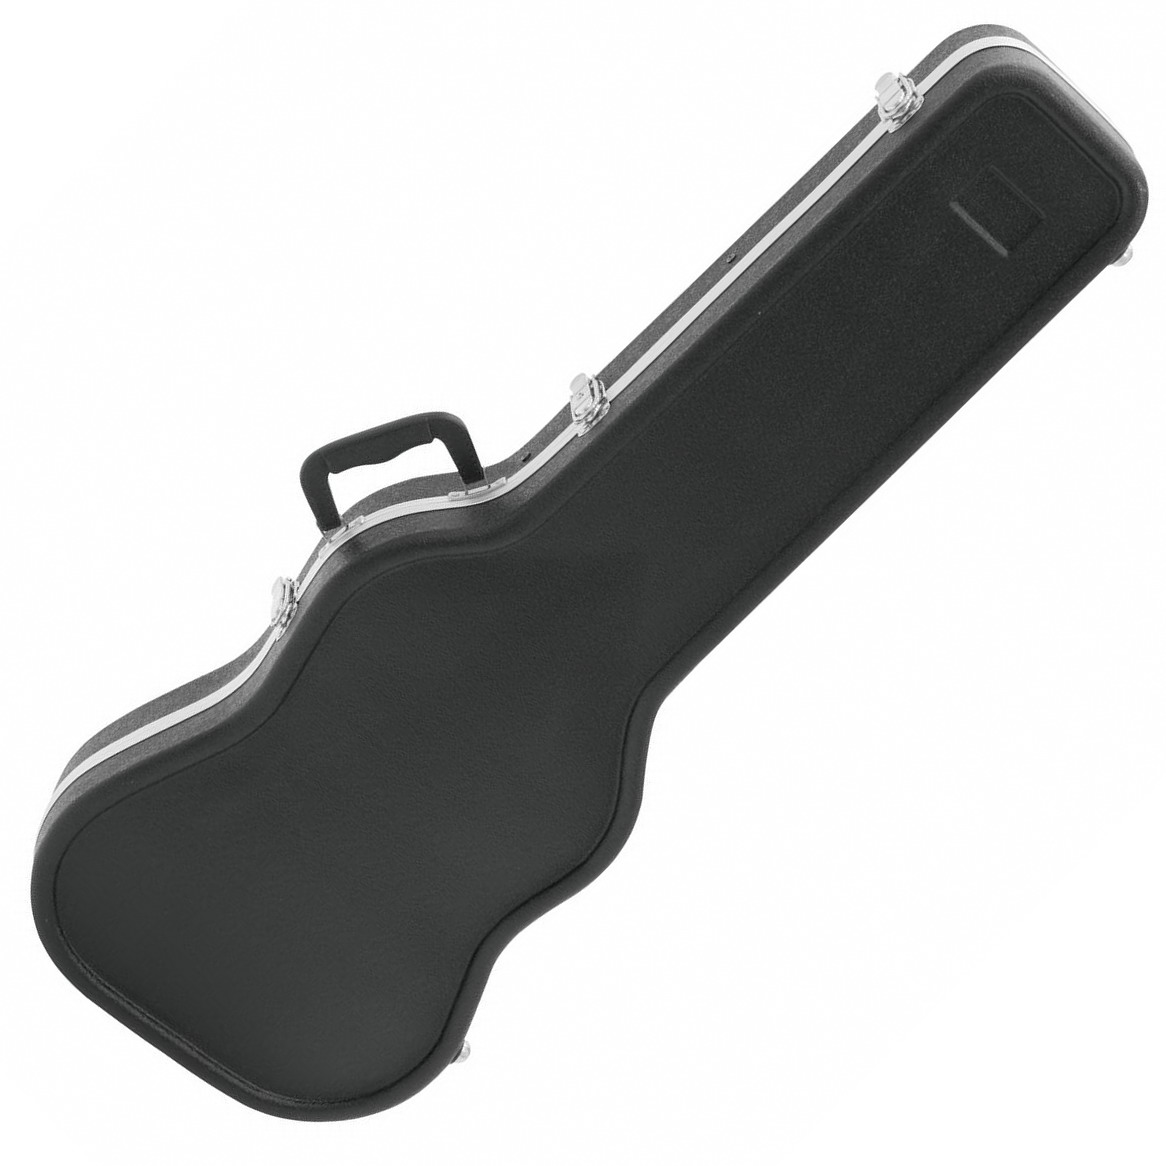 Dimavery ABS kufor pre elektrickú gitaru | Obrázok 1 | eplay.sk